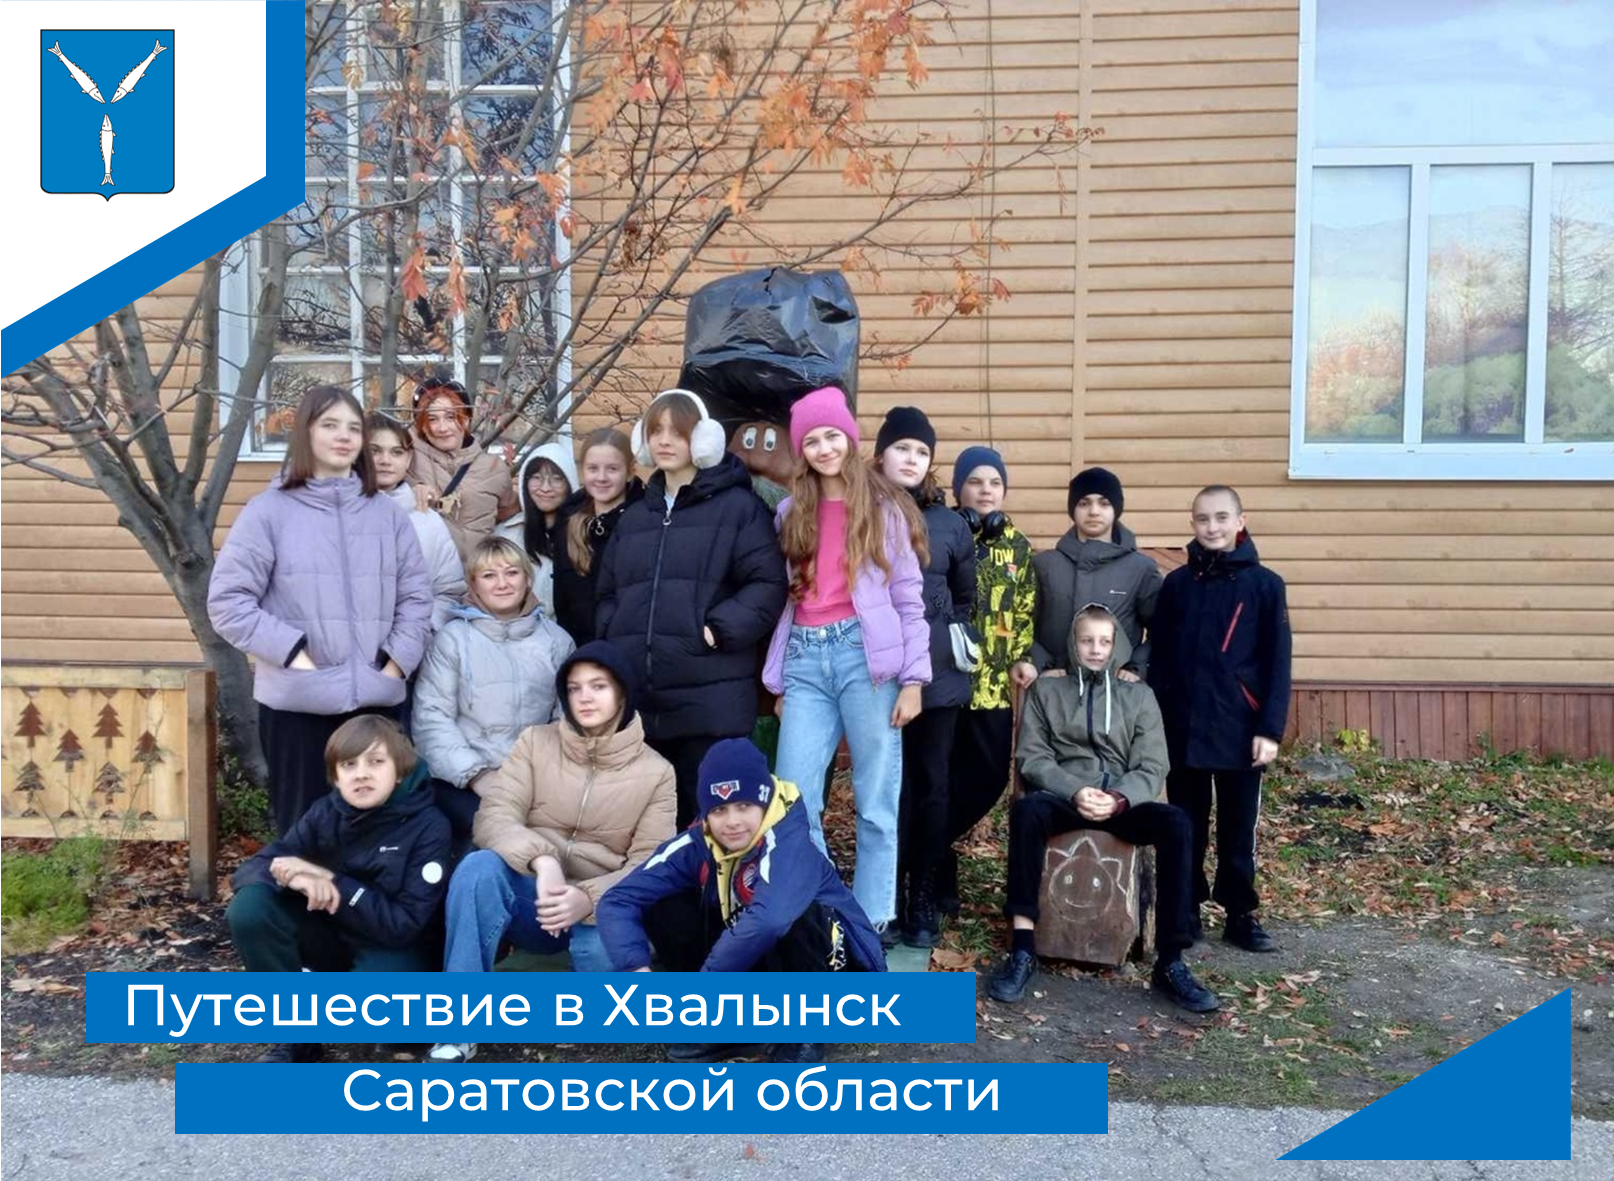 Поездка в Хвалынск по социальному сертификату в сфере туризма.